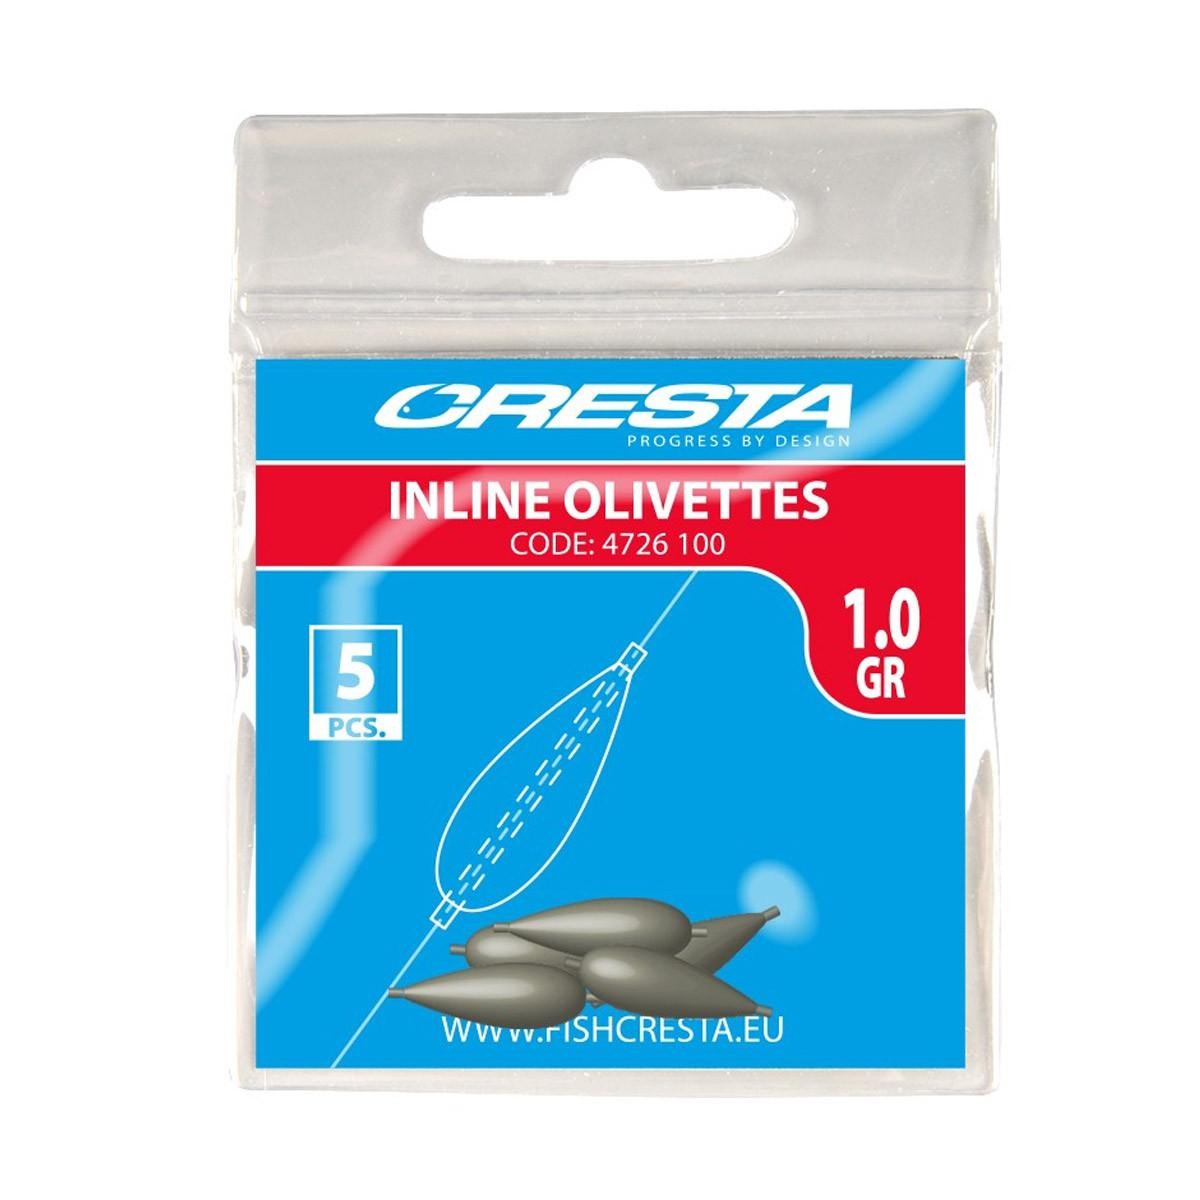 Cresta Inline Olivettes 0.6 gr 5st.